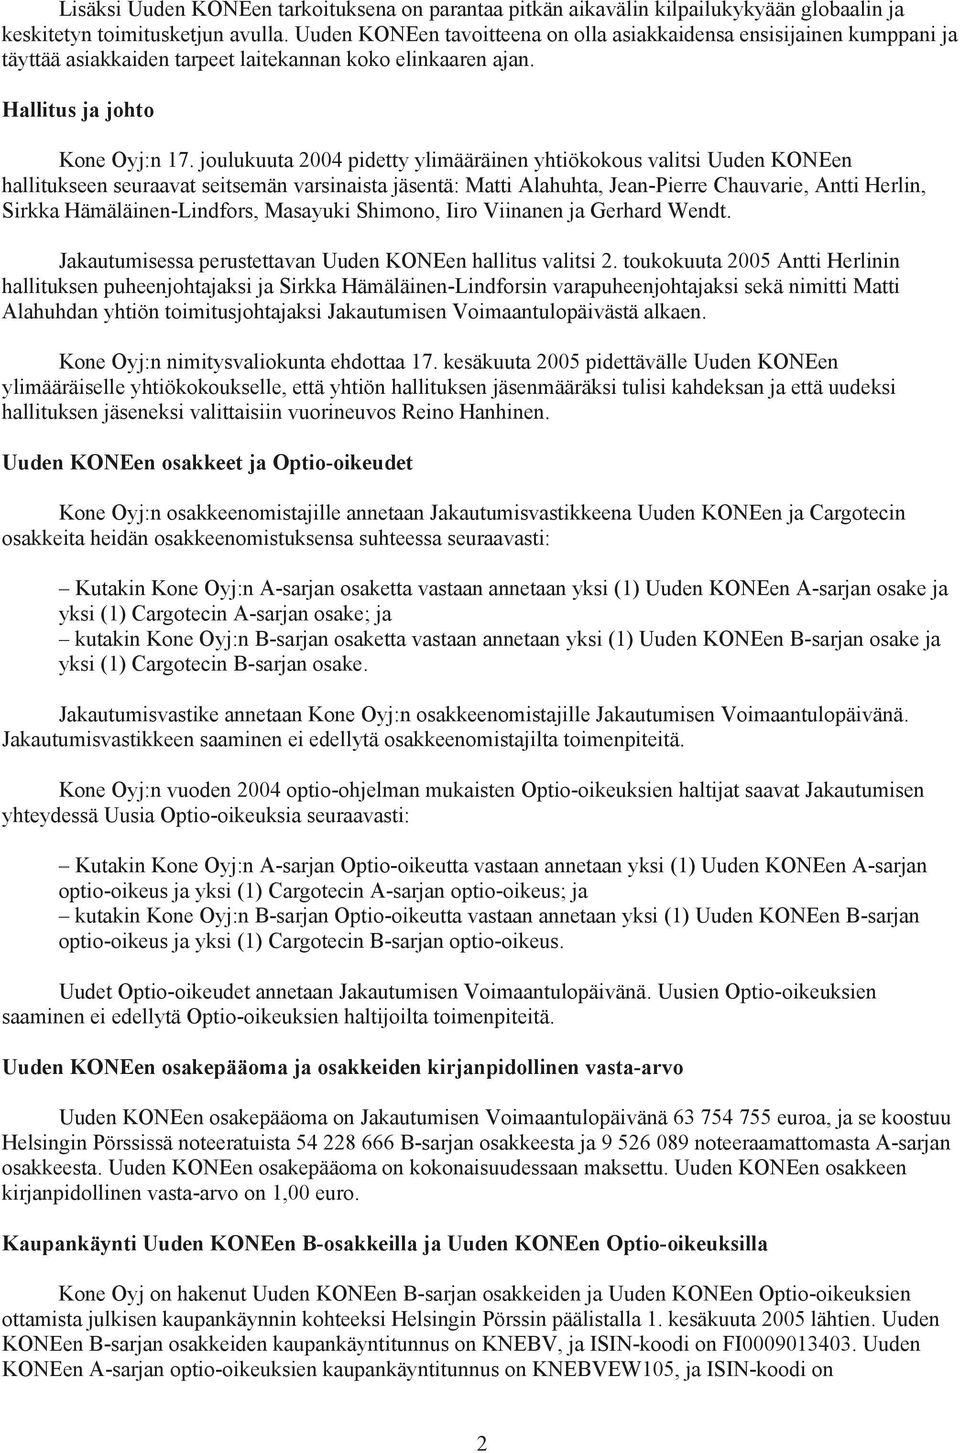 joulukuuta 2004 pidetty ylimääräinen yhtiökokous valitsi Uuden KONEen hallitukseen seuraavat seitsemän varsinaista jäsentä: Matti Alahuhta, Jean-Pierre Chauvarie, Antti Herlin, Sirkka